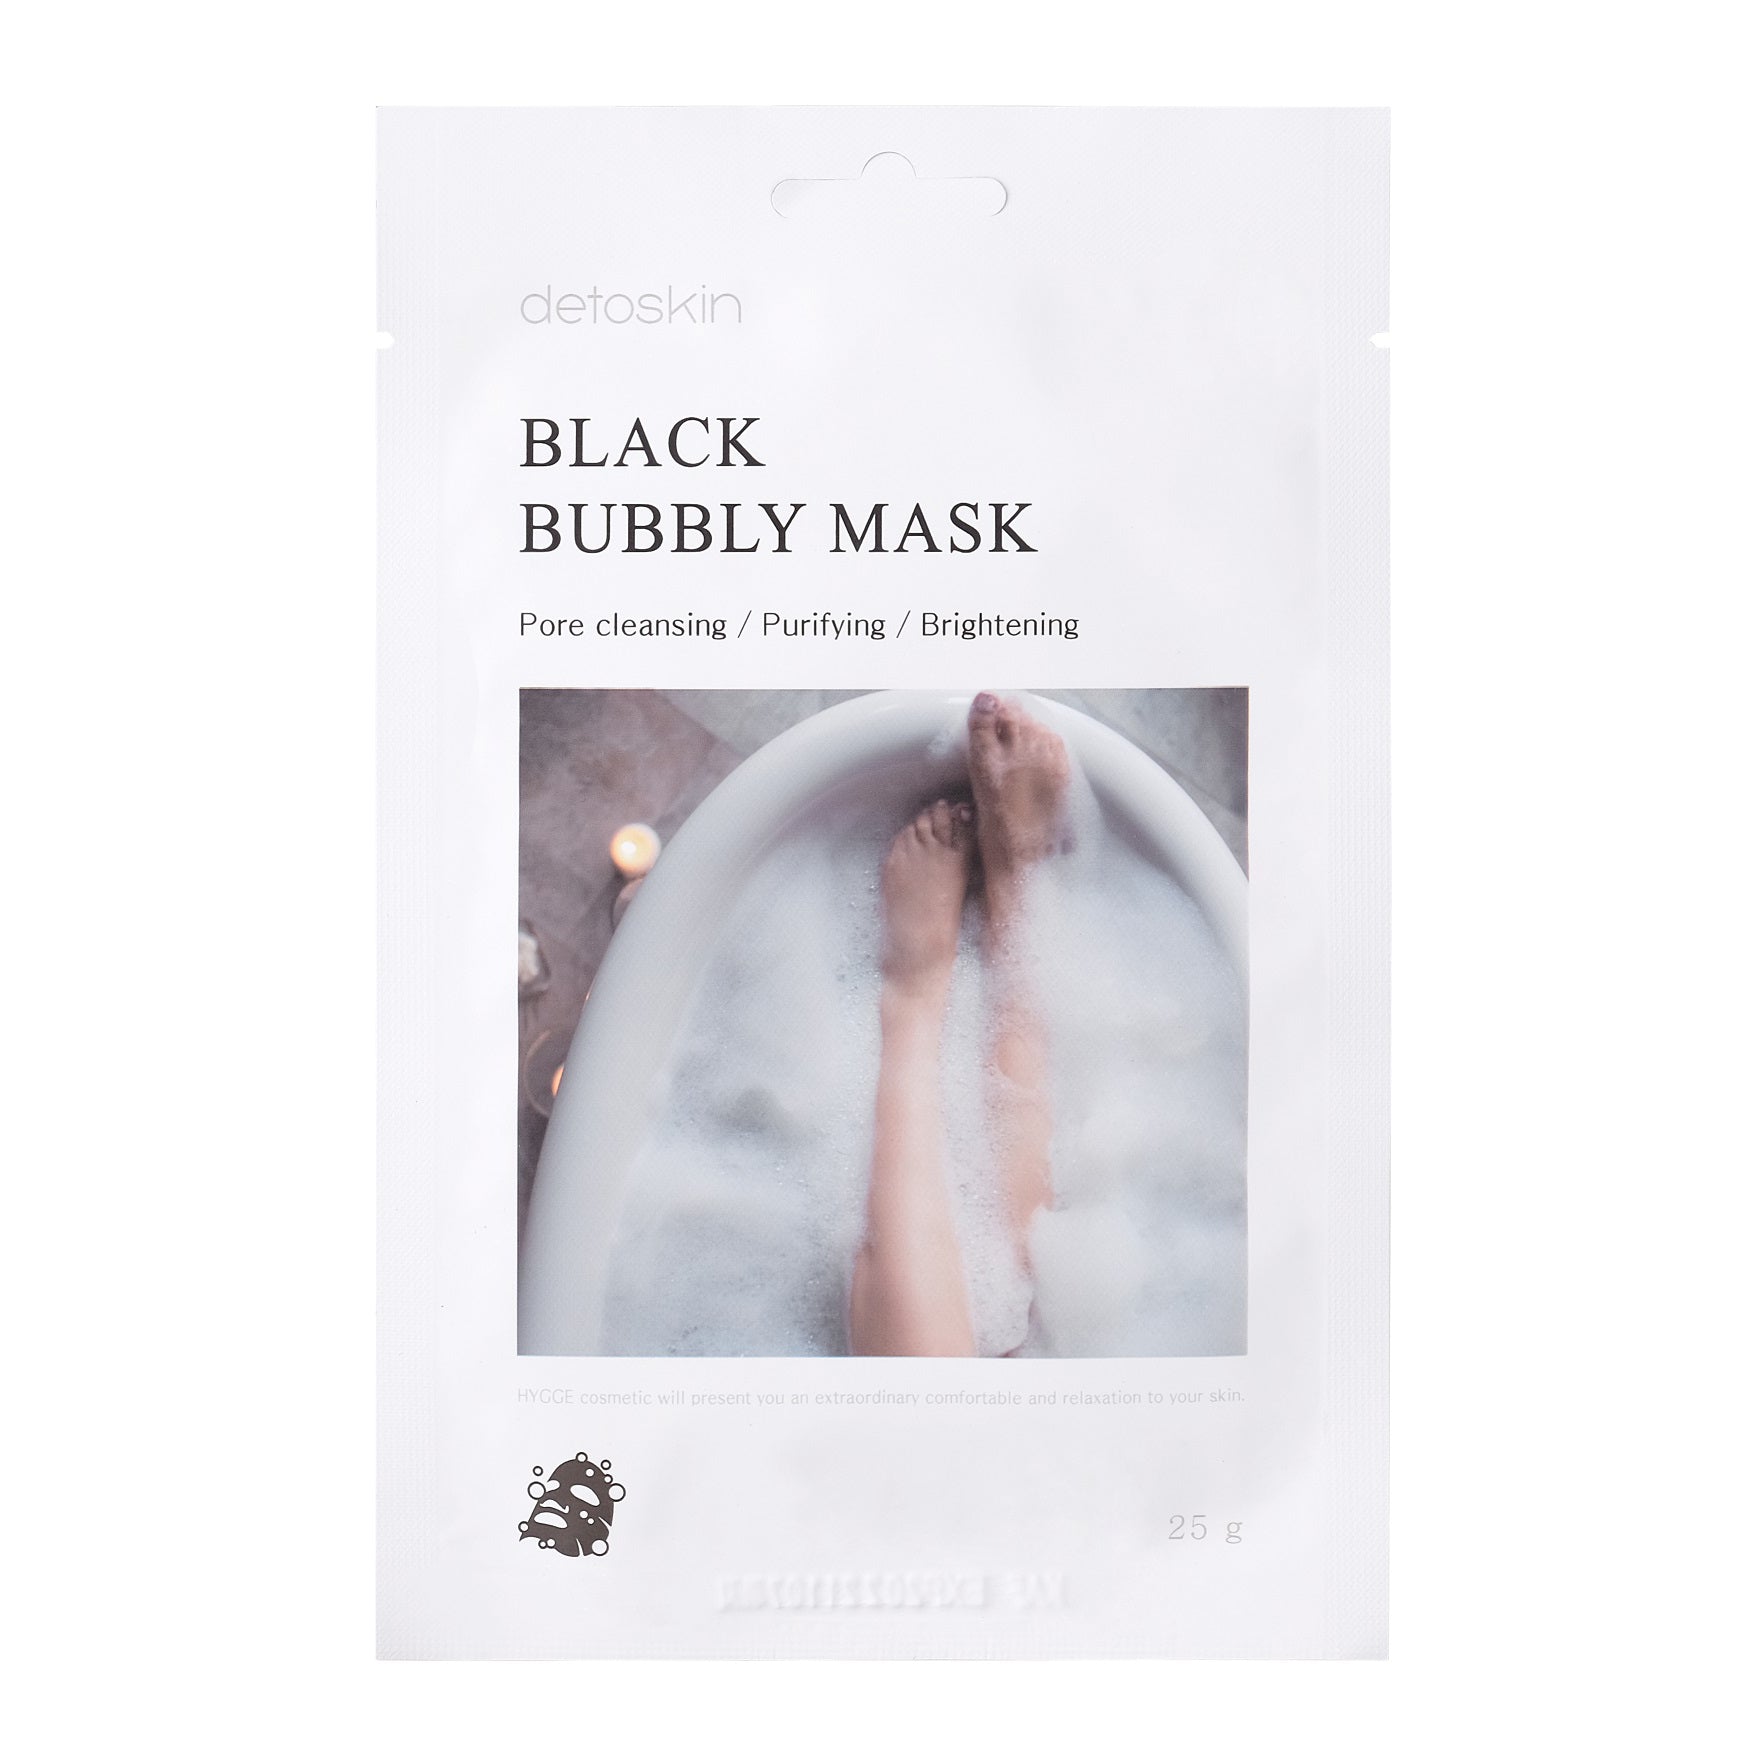 Black Bubbly Mask Detoskin